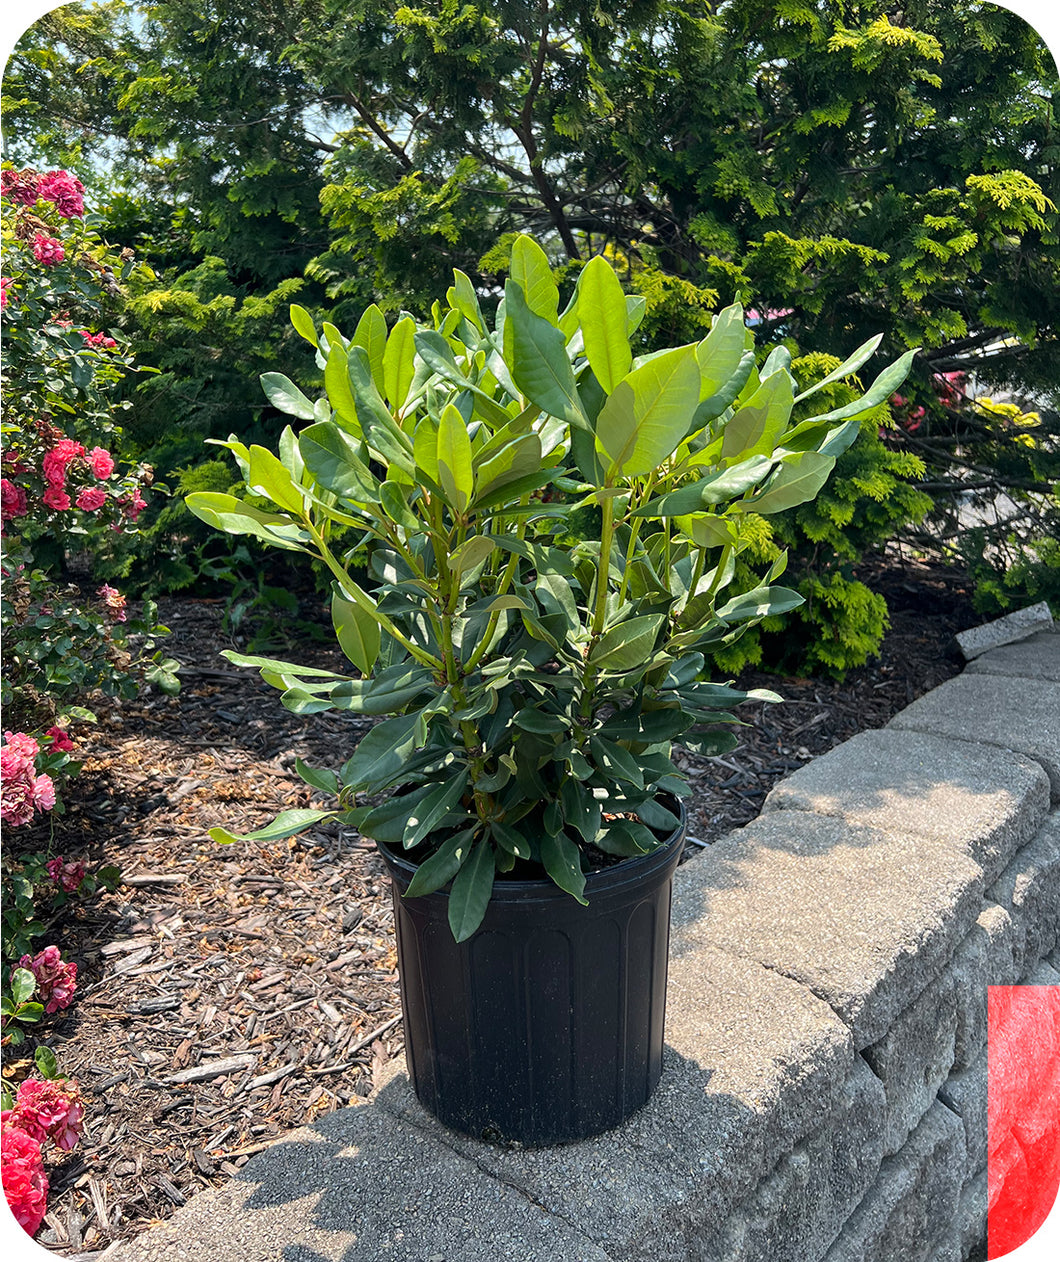 Nova Zembla Rhododendron in #3 pot